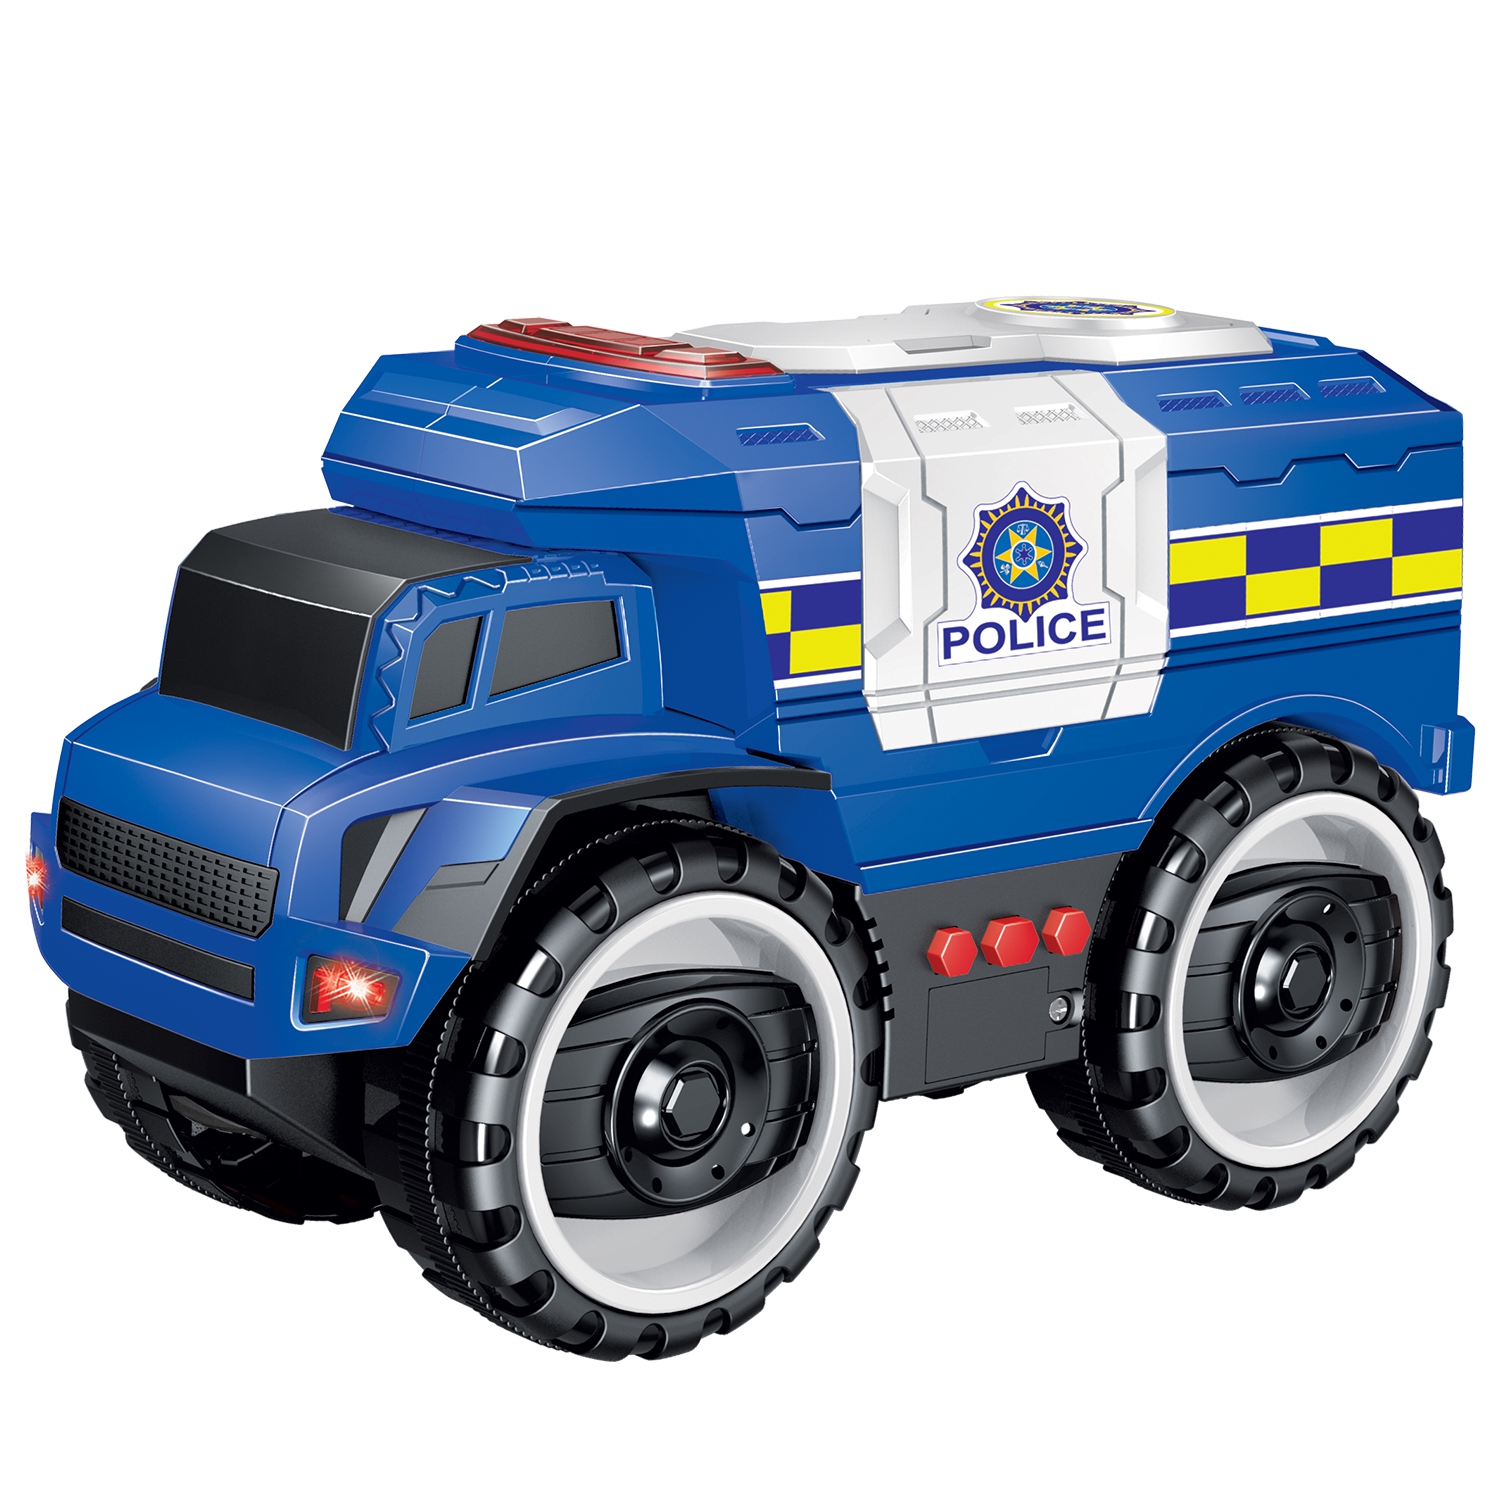 Автомобиль Handers "Большие колёса: Машина полиции", 23 см, синий/белый